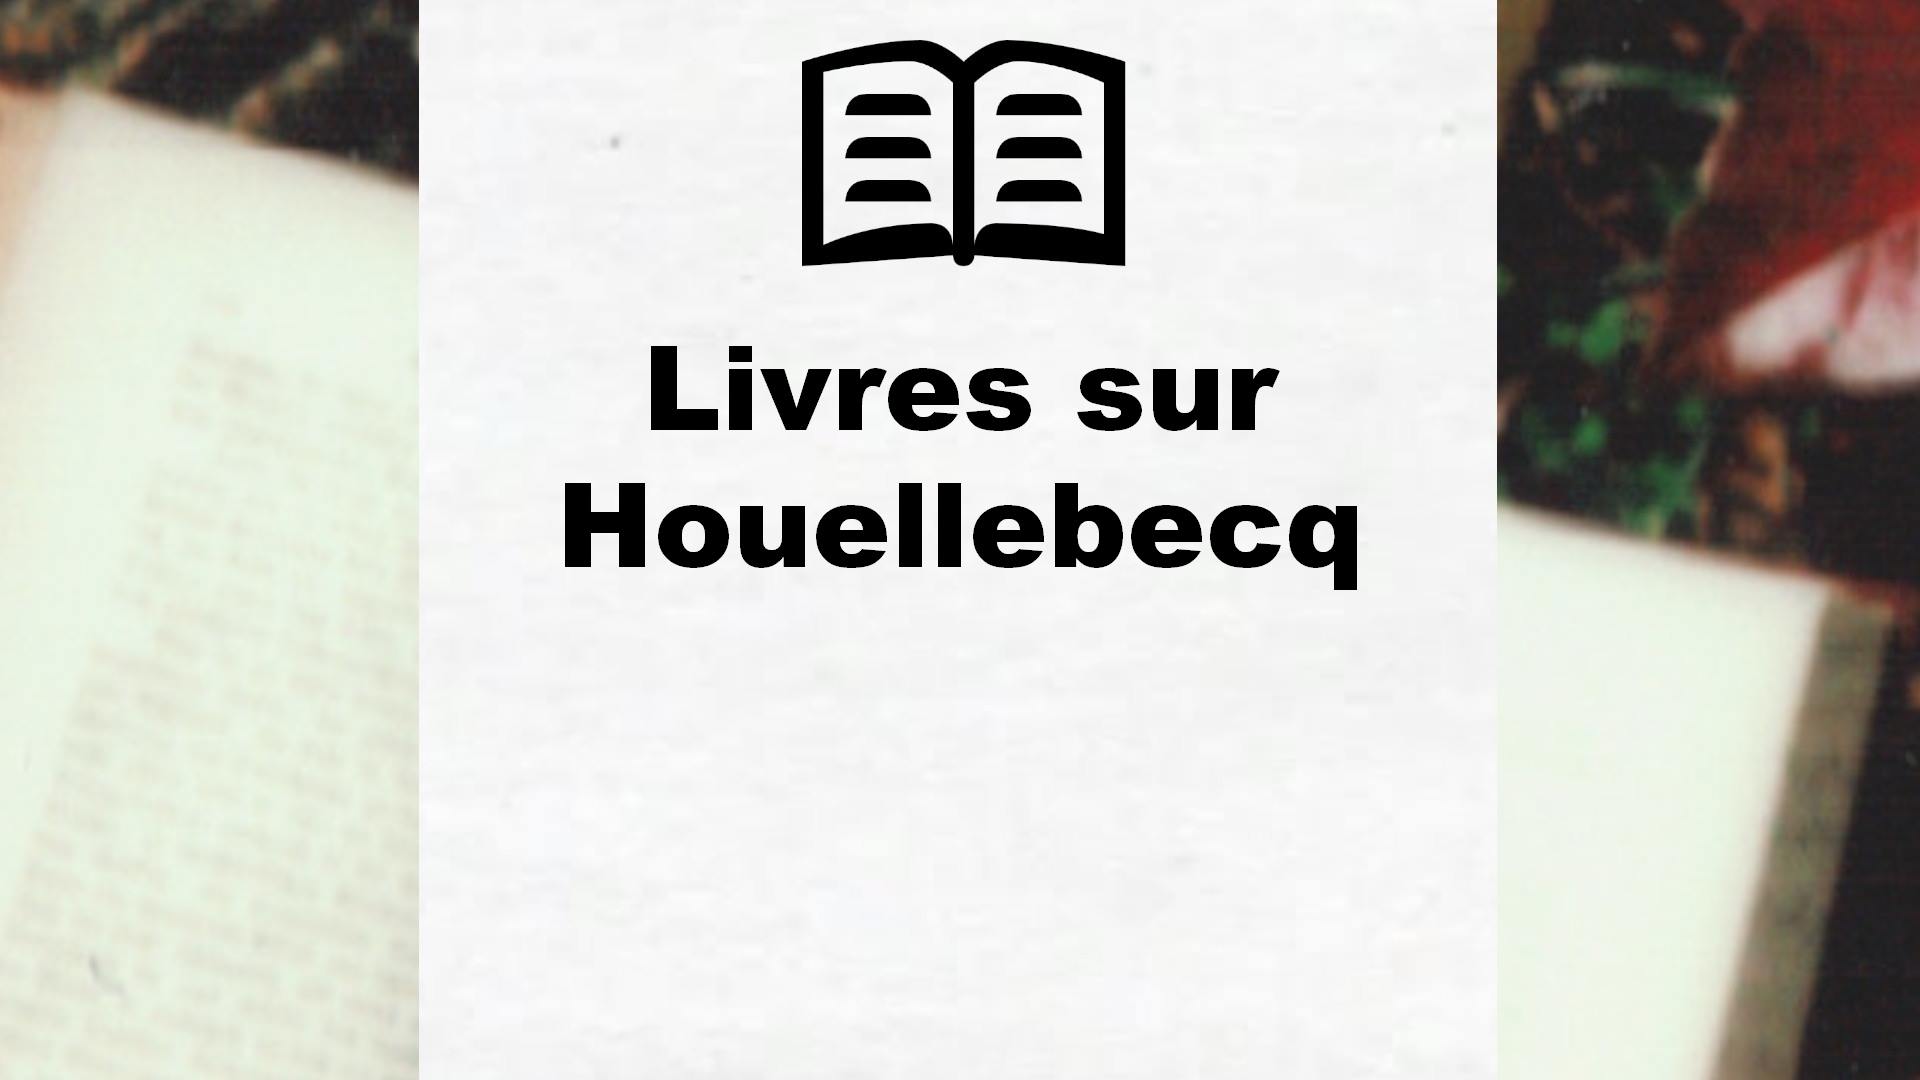 Livres sur Houellebecq